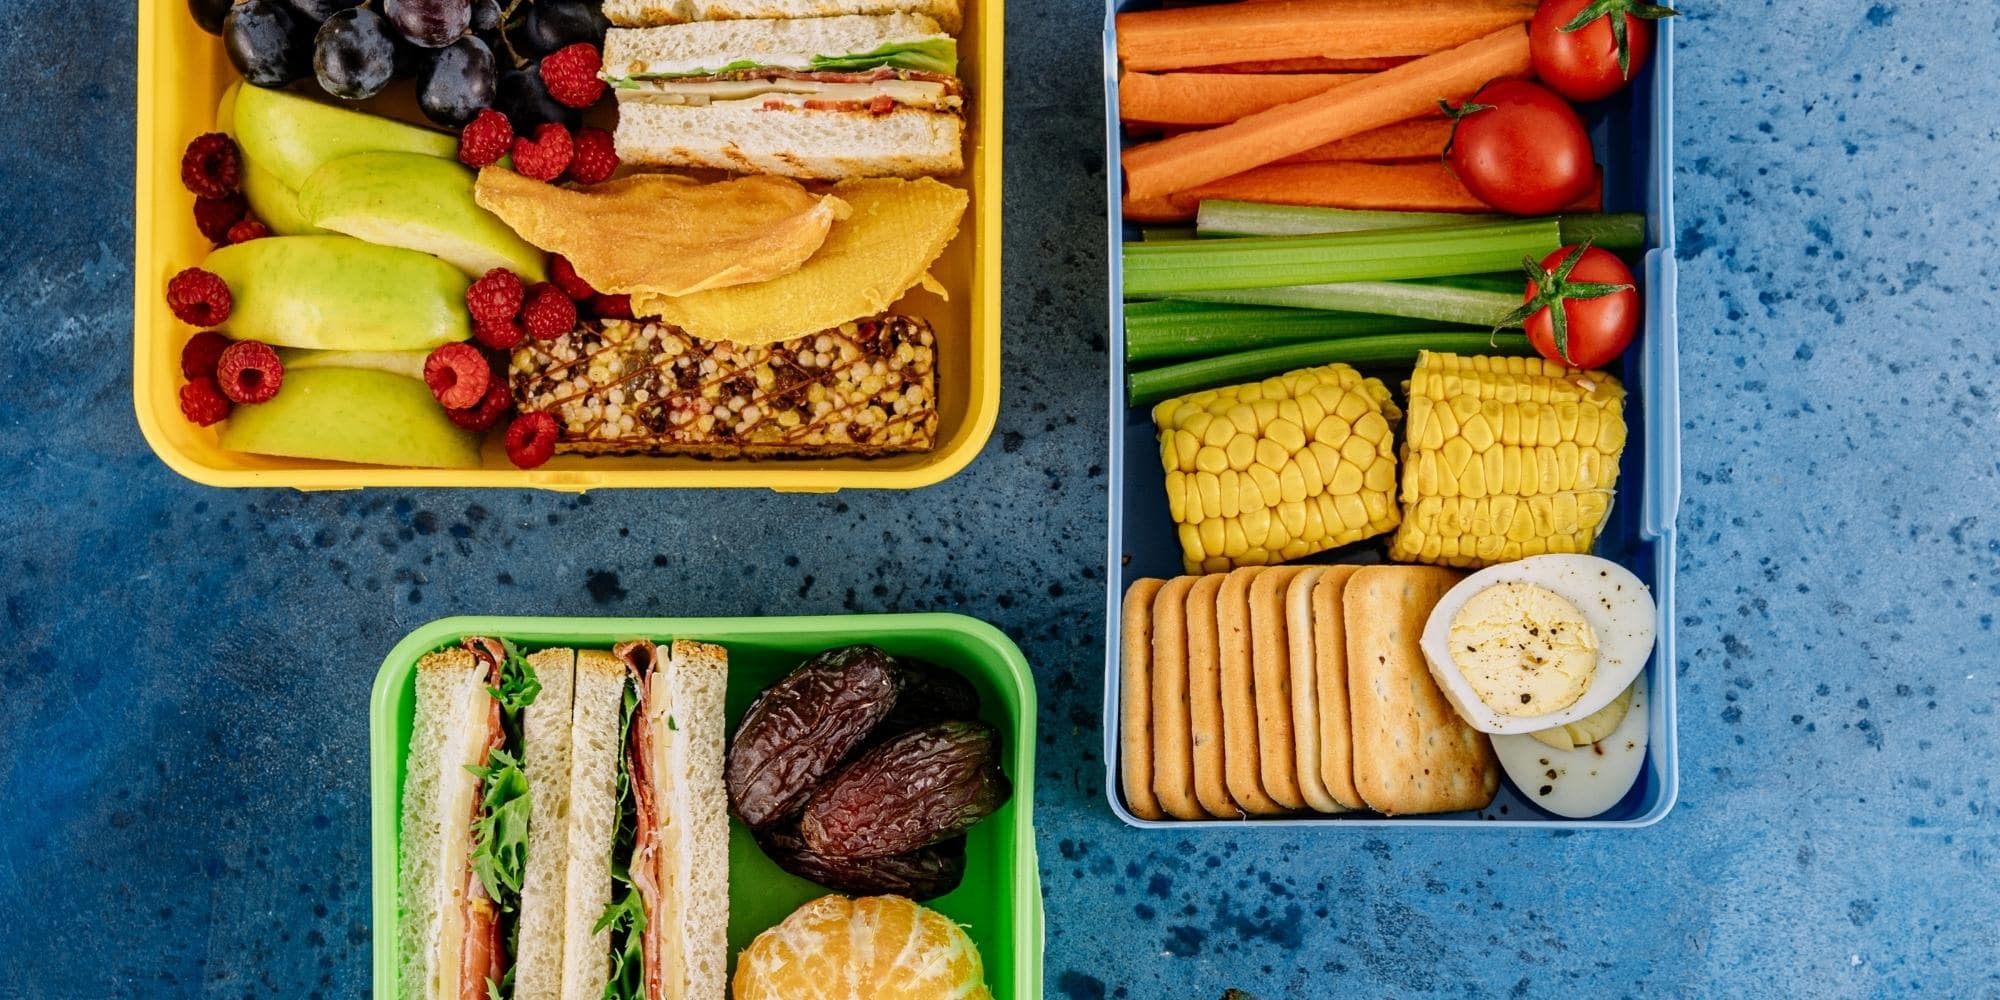 Plats sains, lunch box, aliments sains, diététique